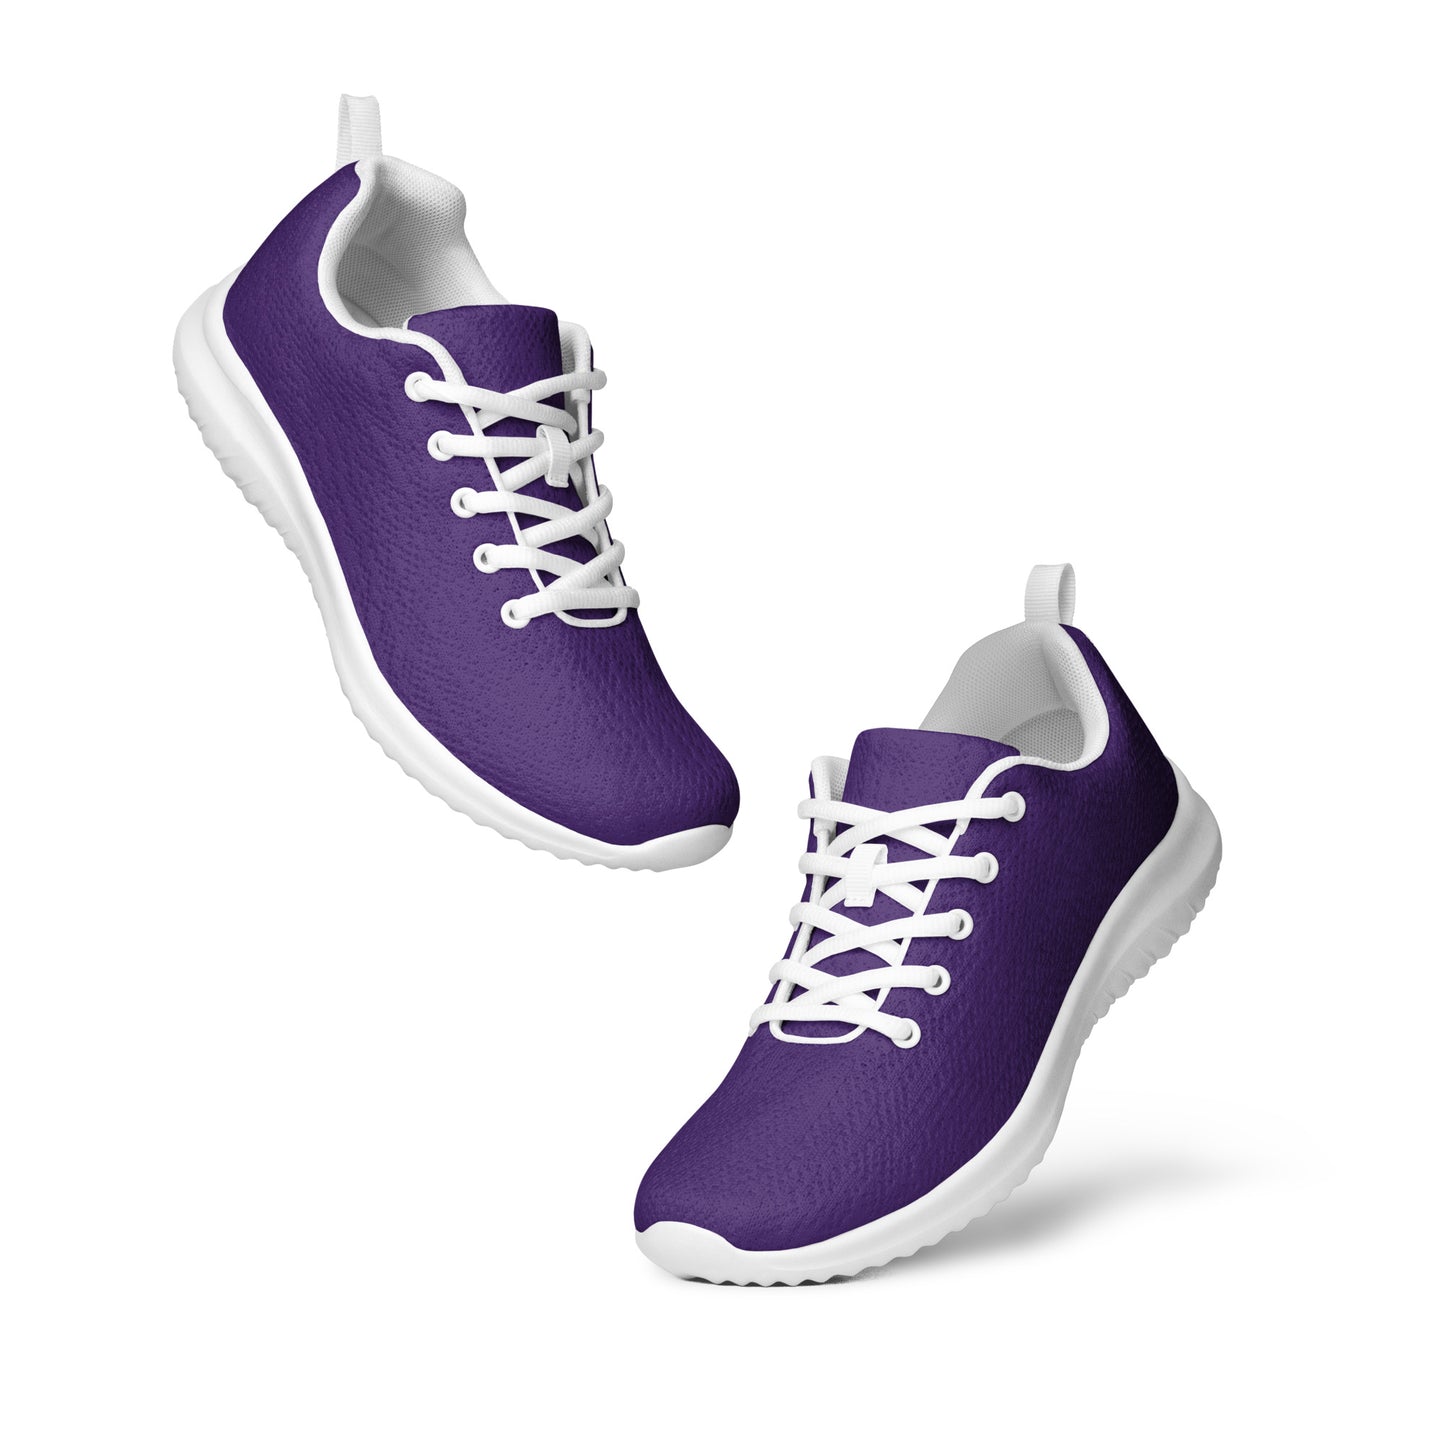 Men’s Purple Athletic Shoes